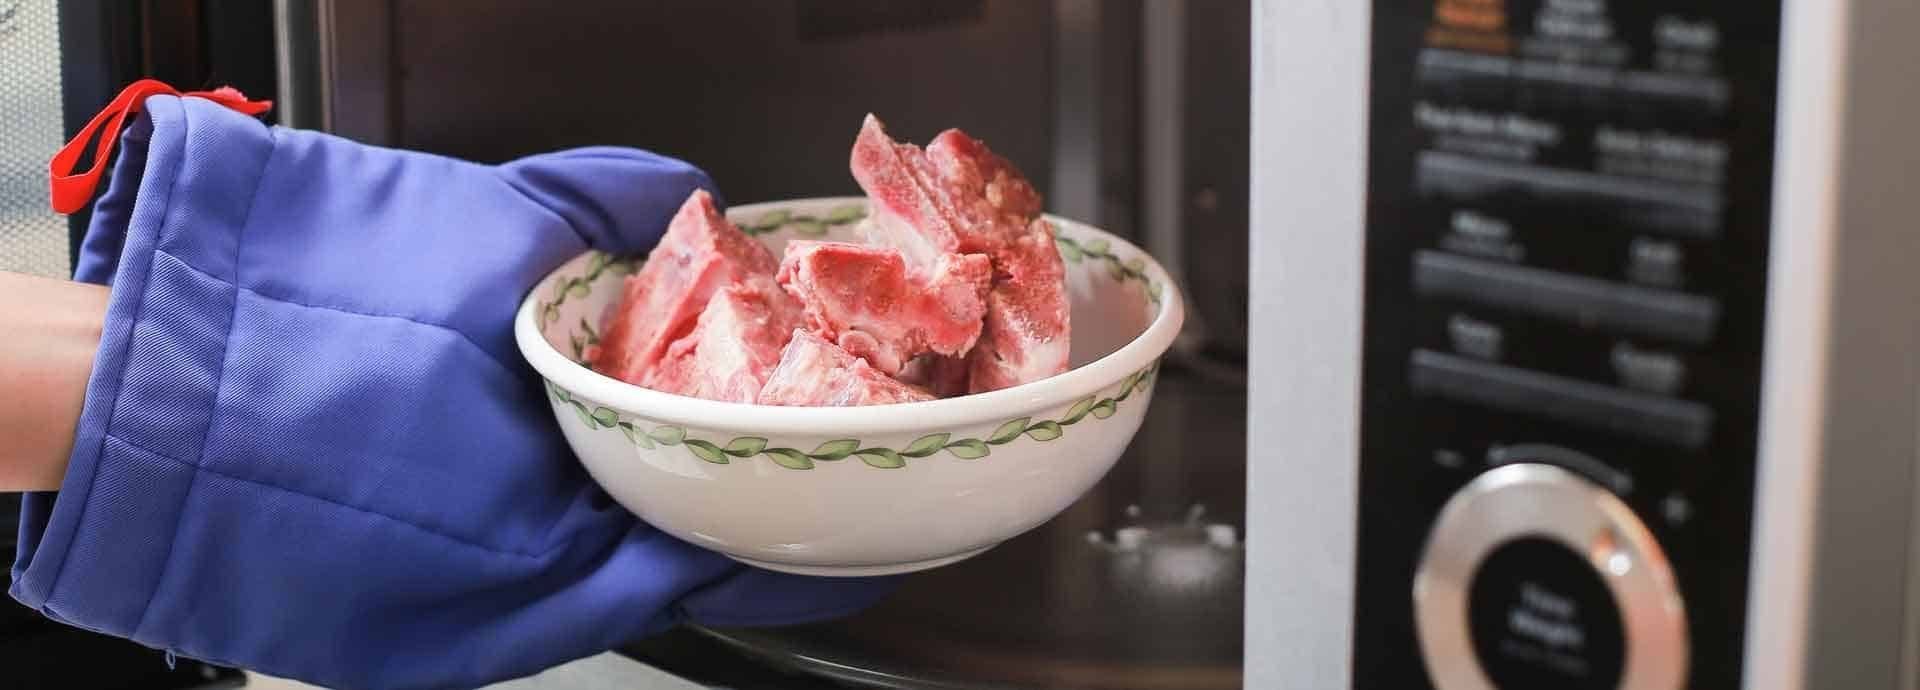 Как быстро разморозить мясо в микроволновке